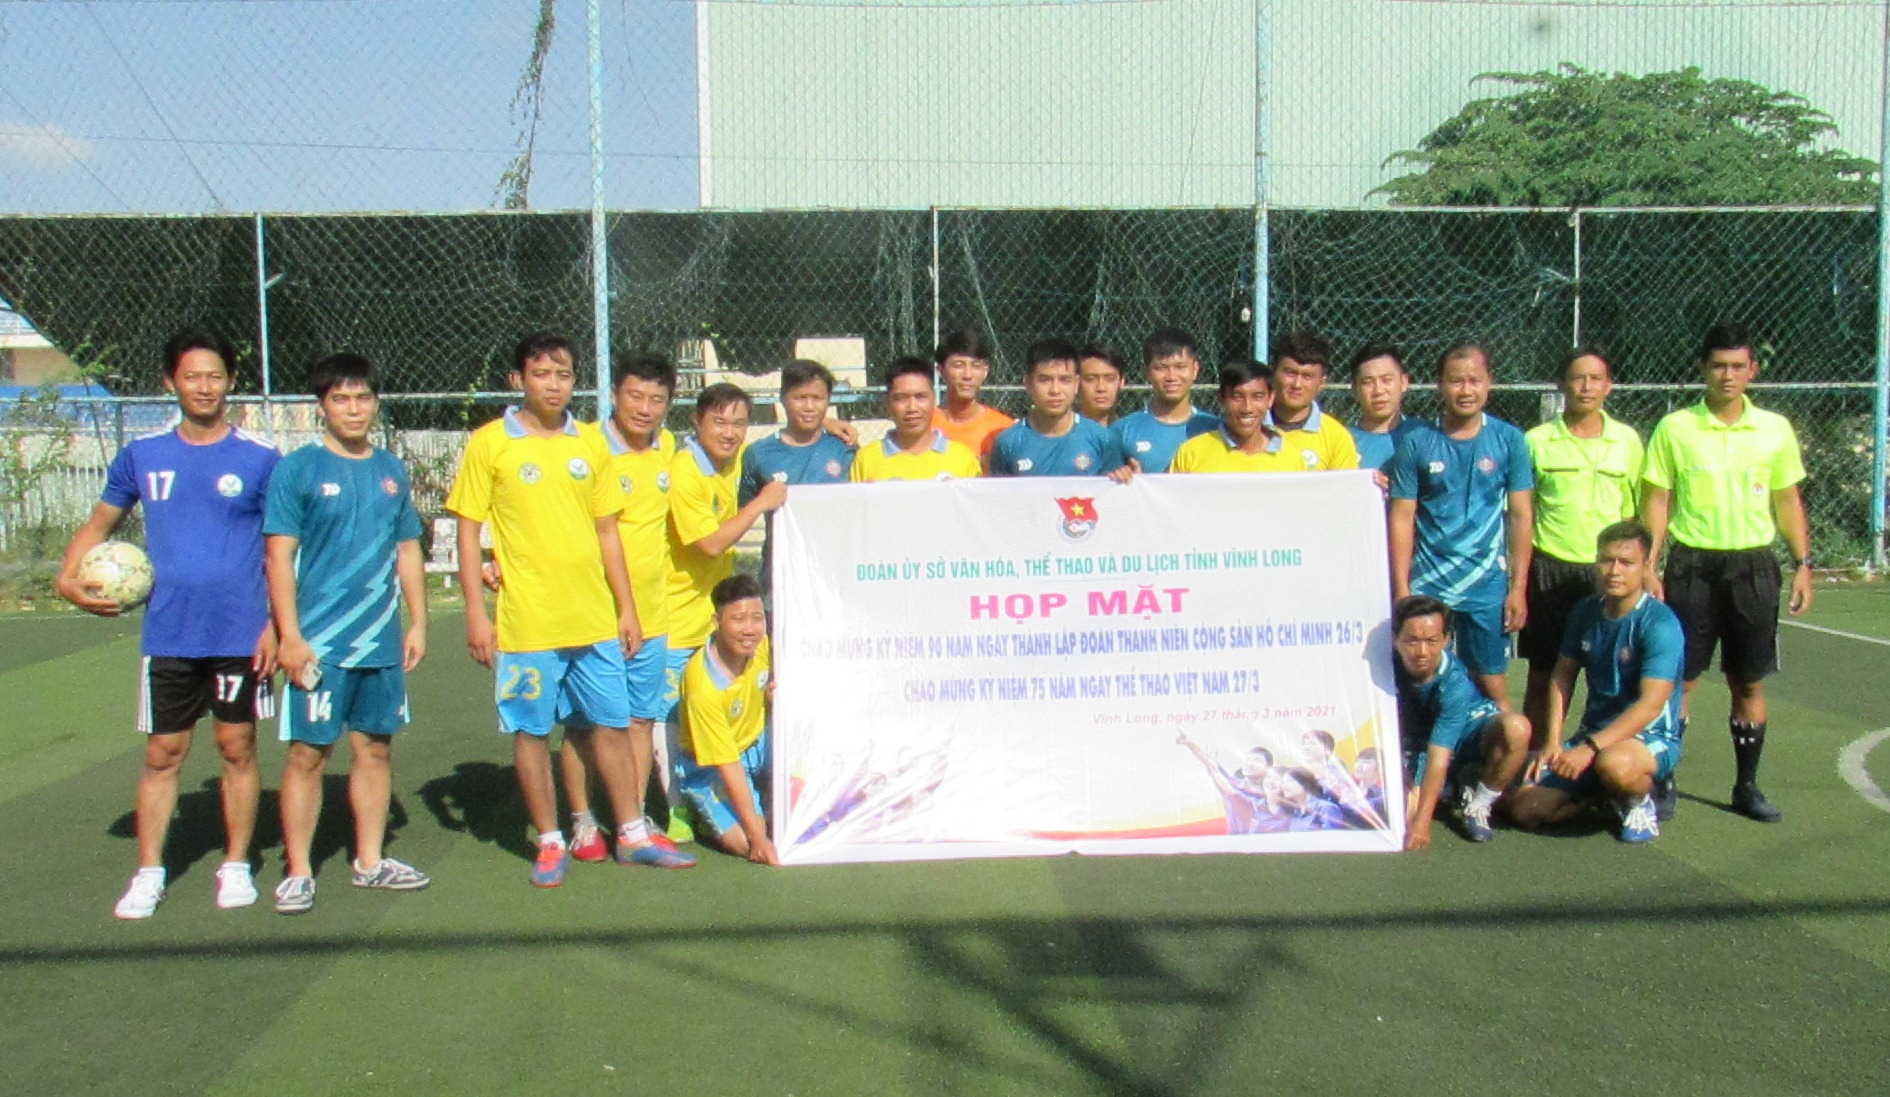 Hoạt động thể thao kỷ niệm Ngày thành lập Đoàn Thanh niên cộng sản Hồ Chí Minh và Ngày Thể thao Việt Nam